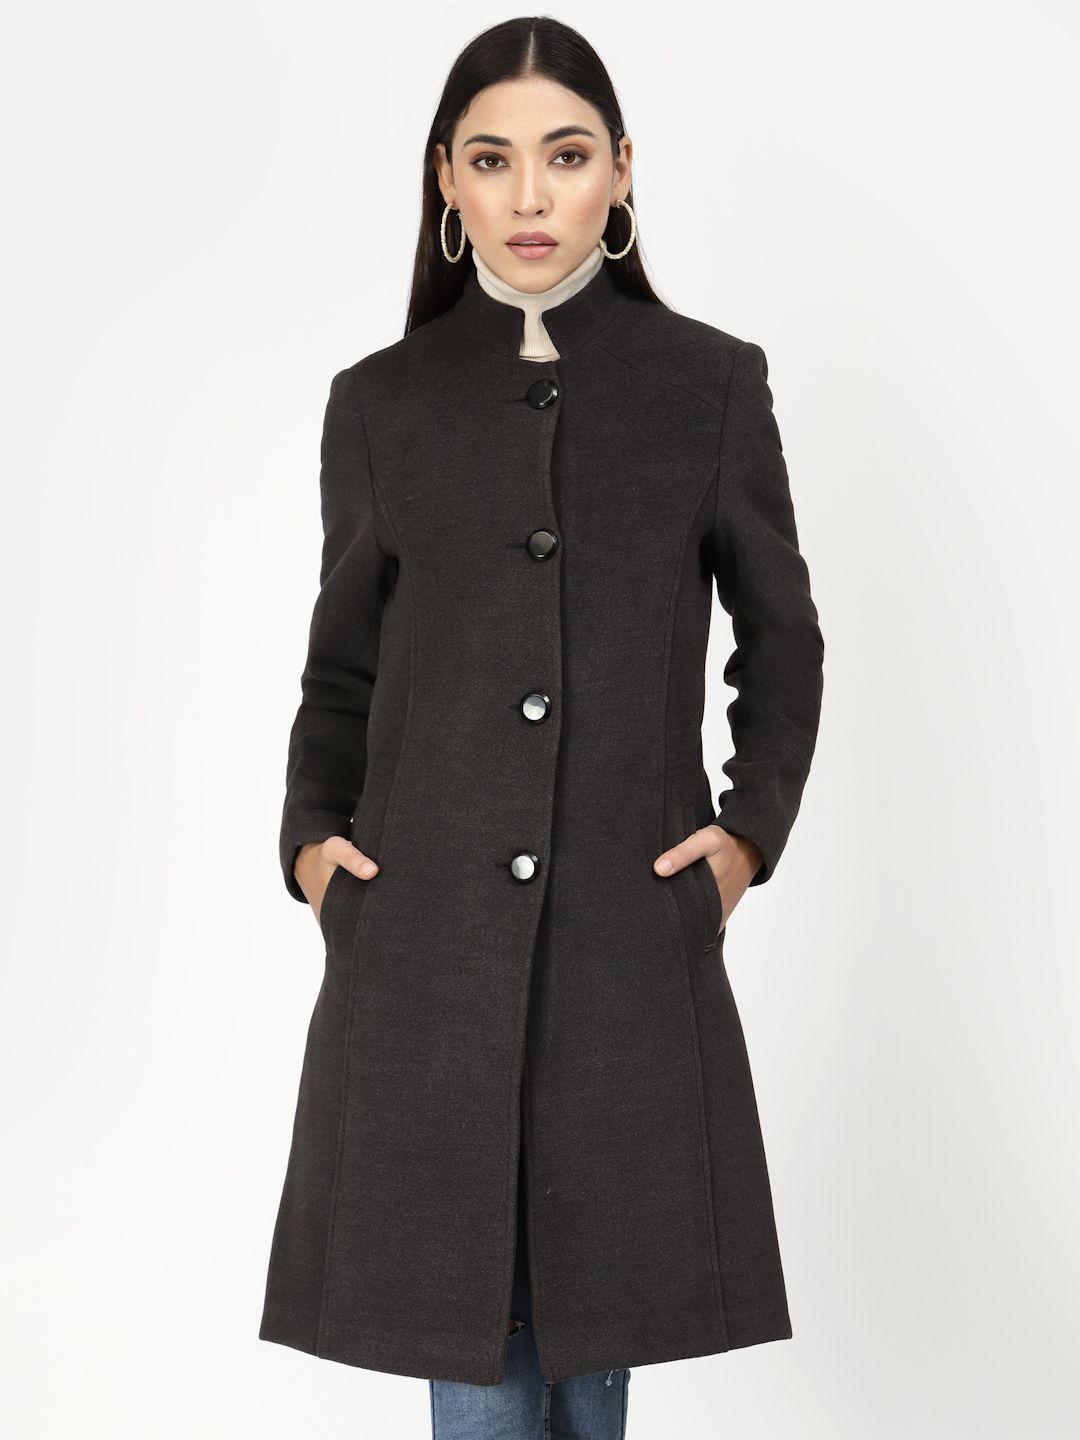 juelle women charcoal grey longline overcoat